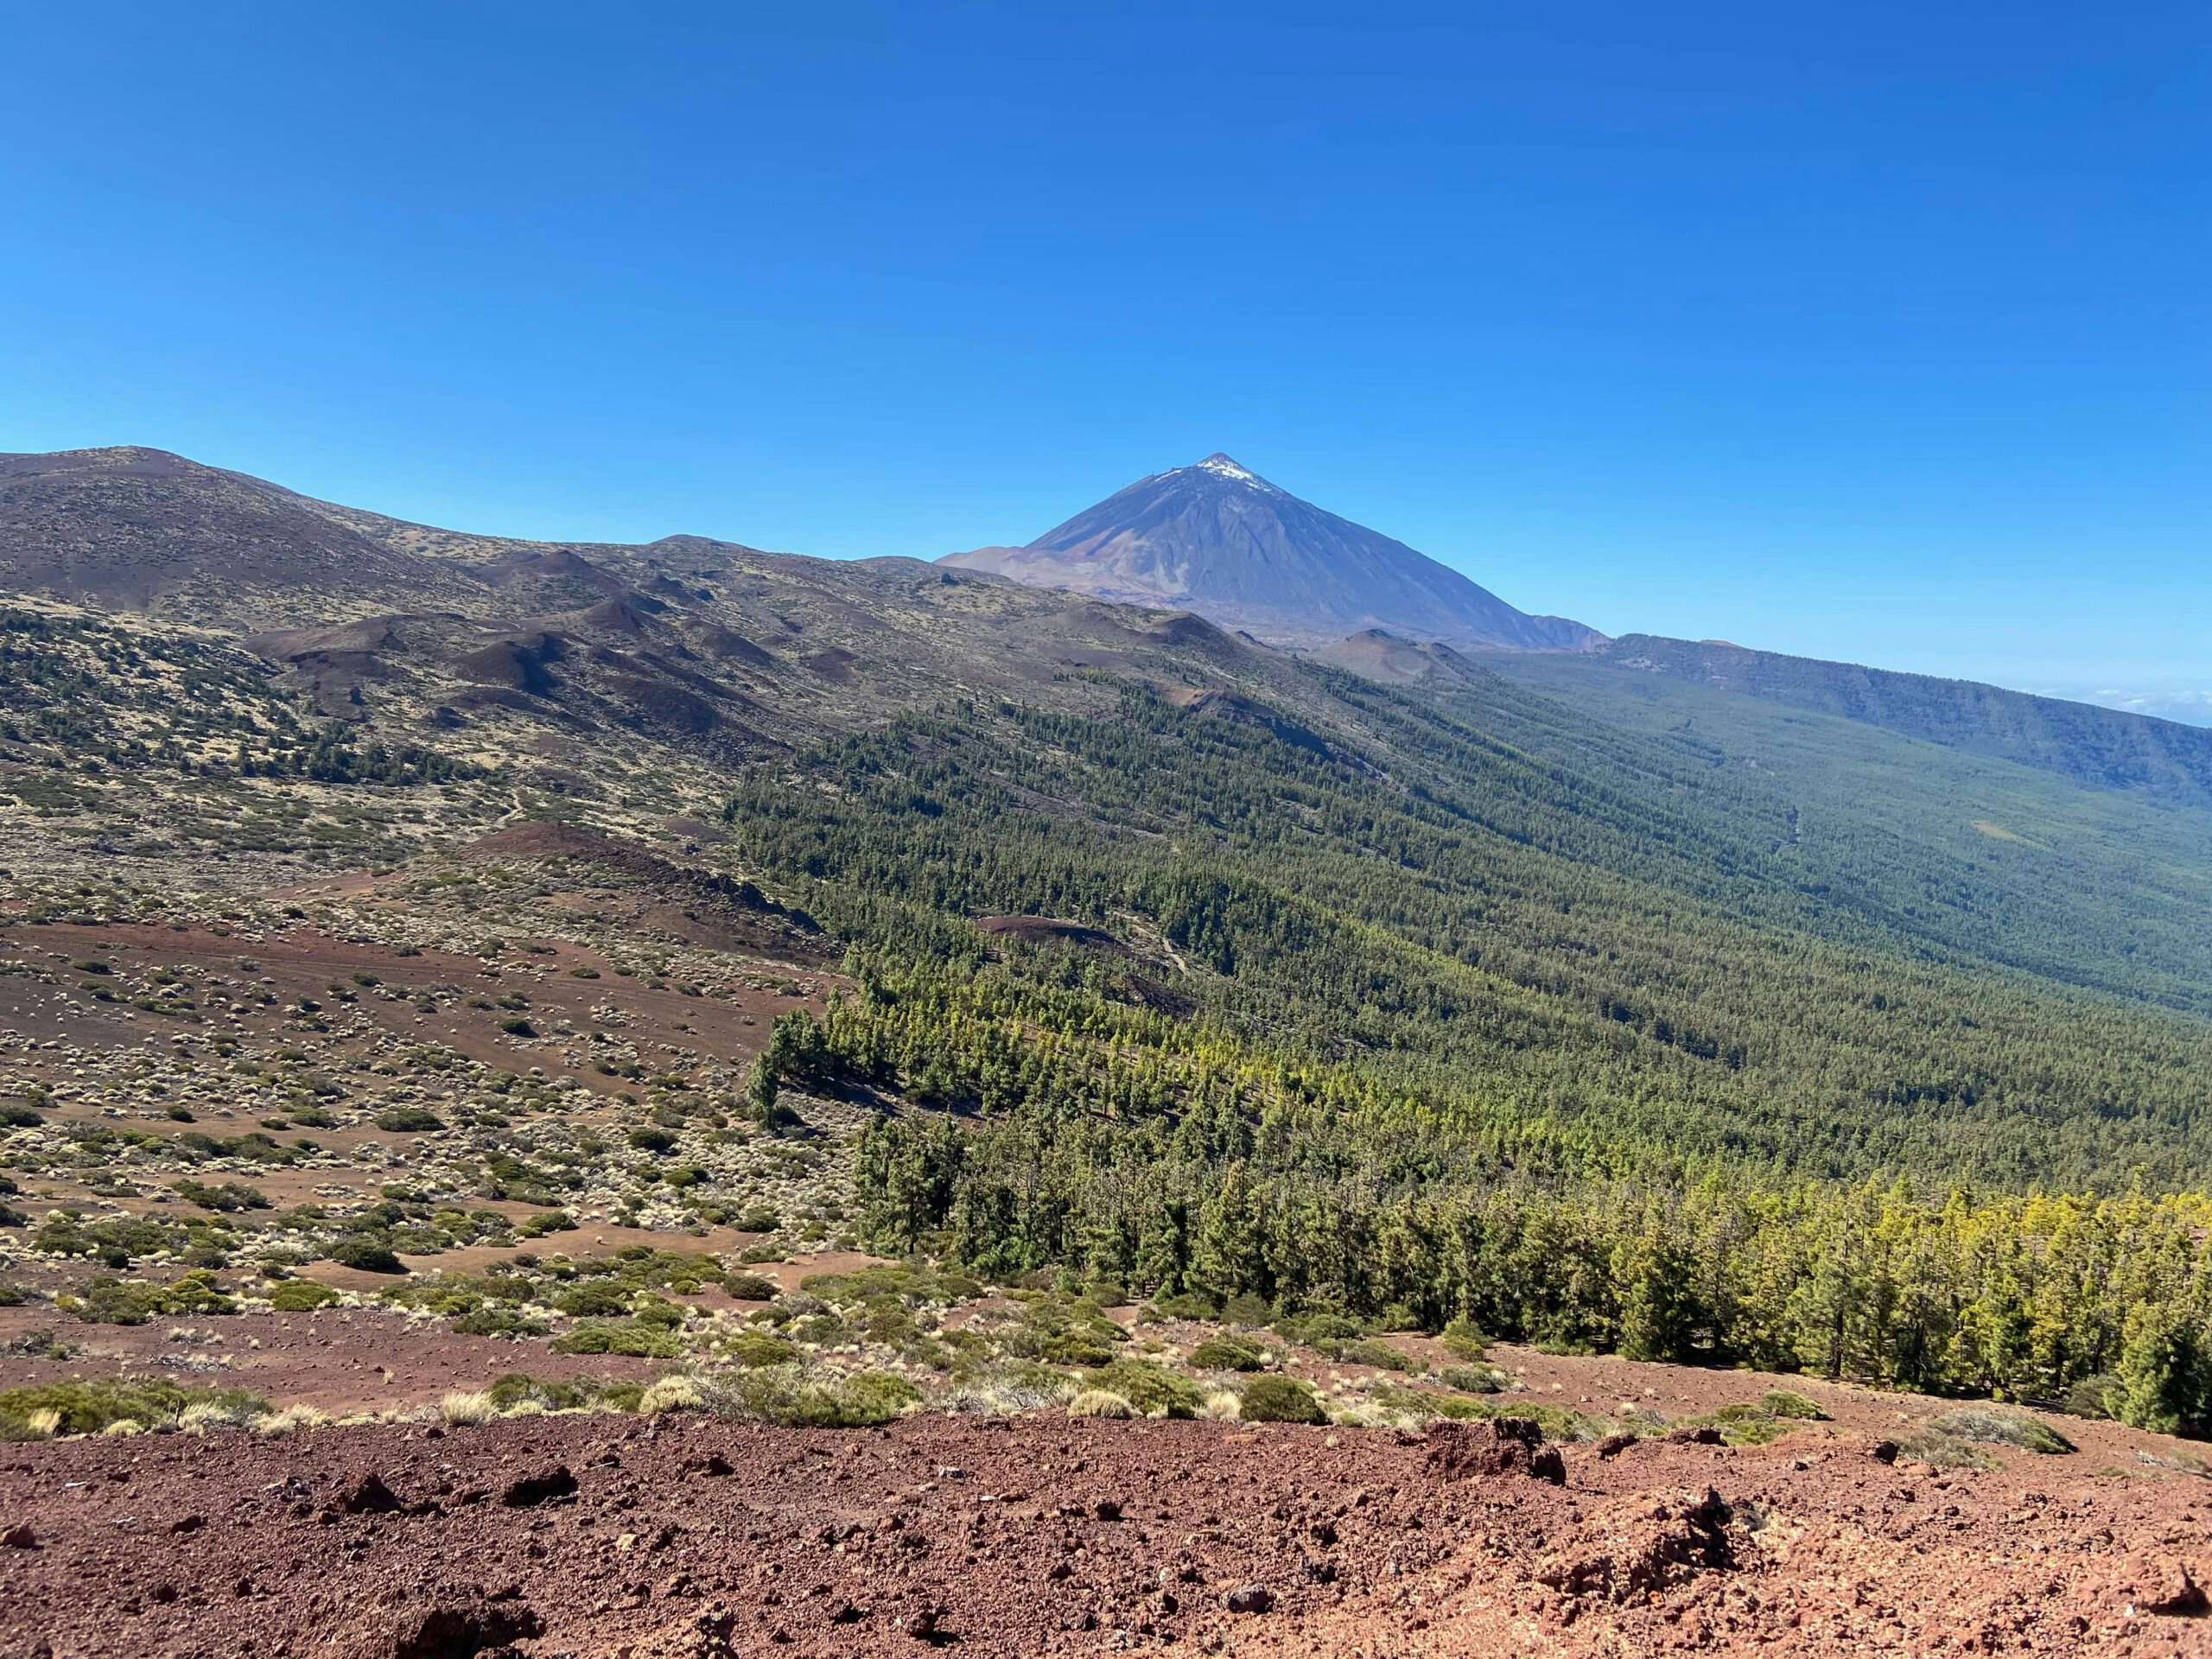 Blick auf den Teide und die Kiefernwälder des Orotava Tals von der Montaña Limón